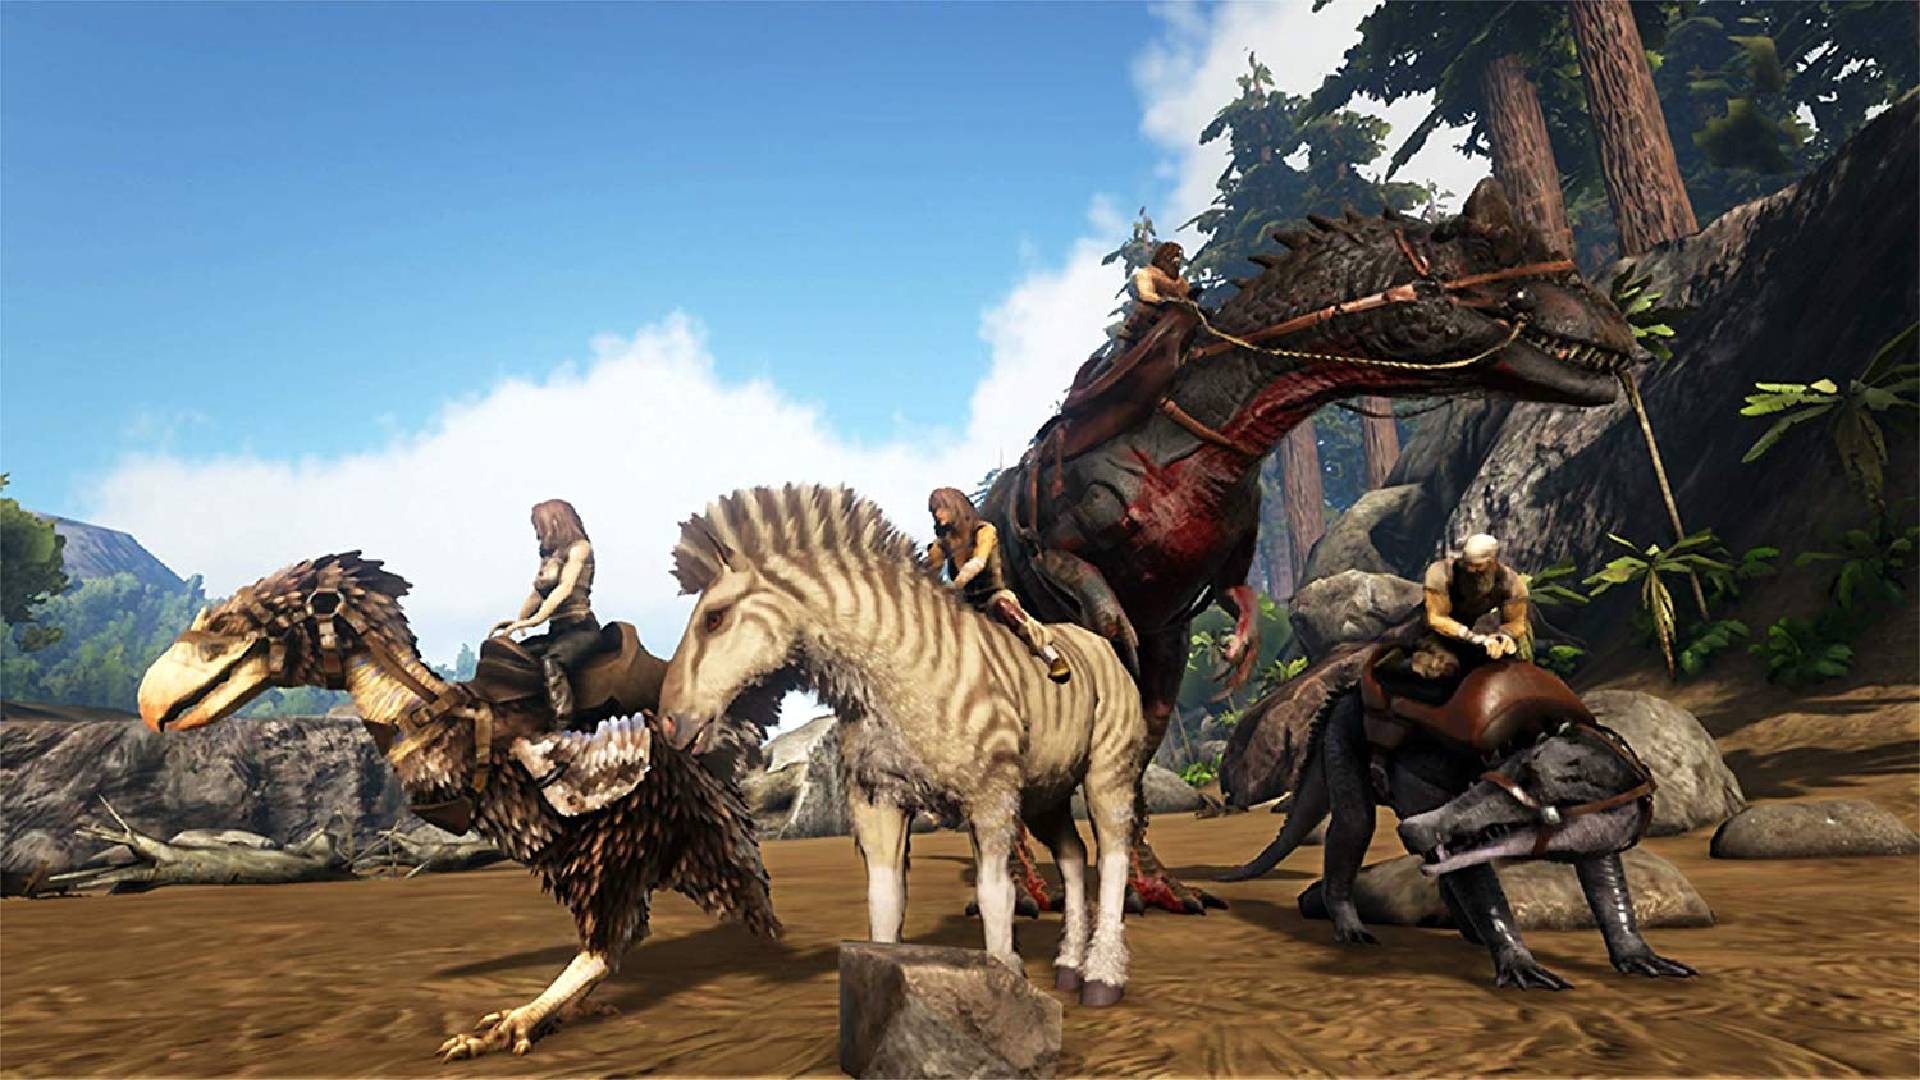 Sandbox-Spiele: Ein Charakter reitet auf einem mit Waffen bewaffneten Dinosaurier durch mehrere andere Tiere 